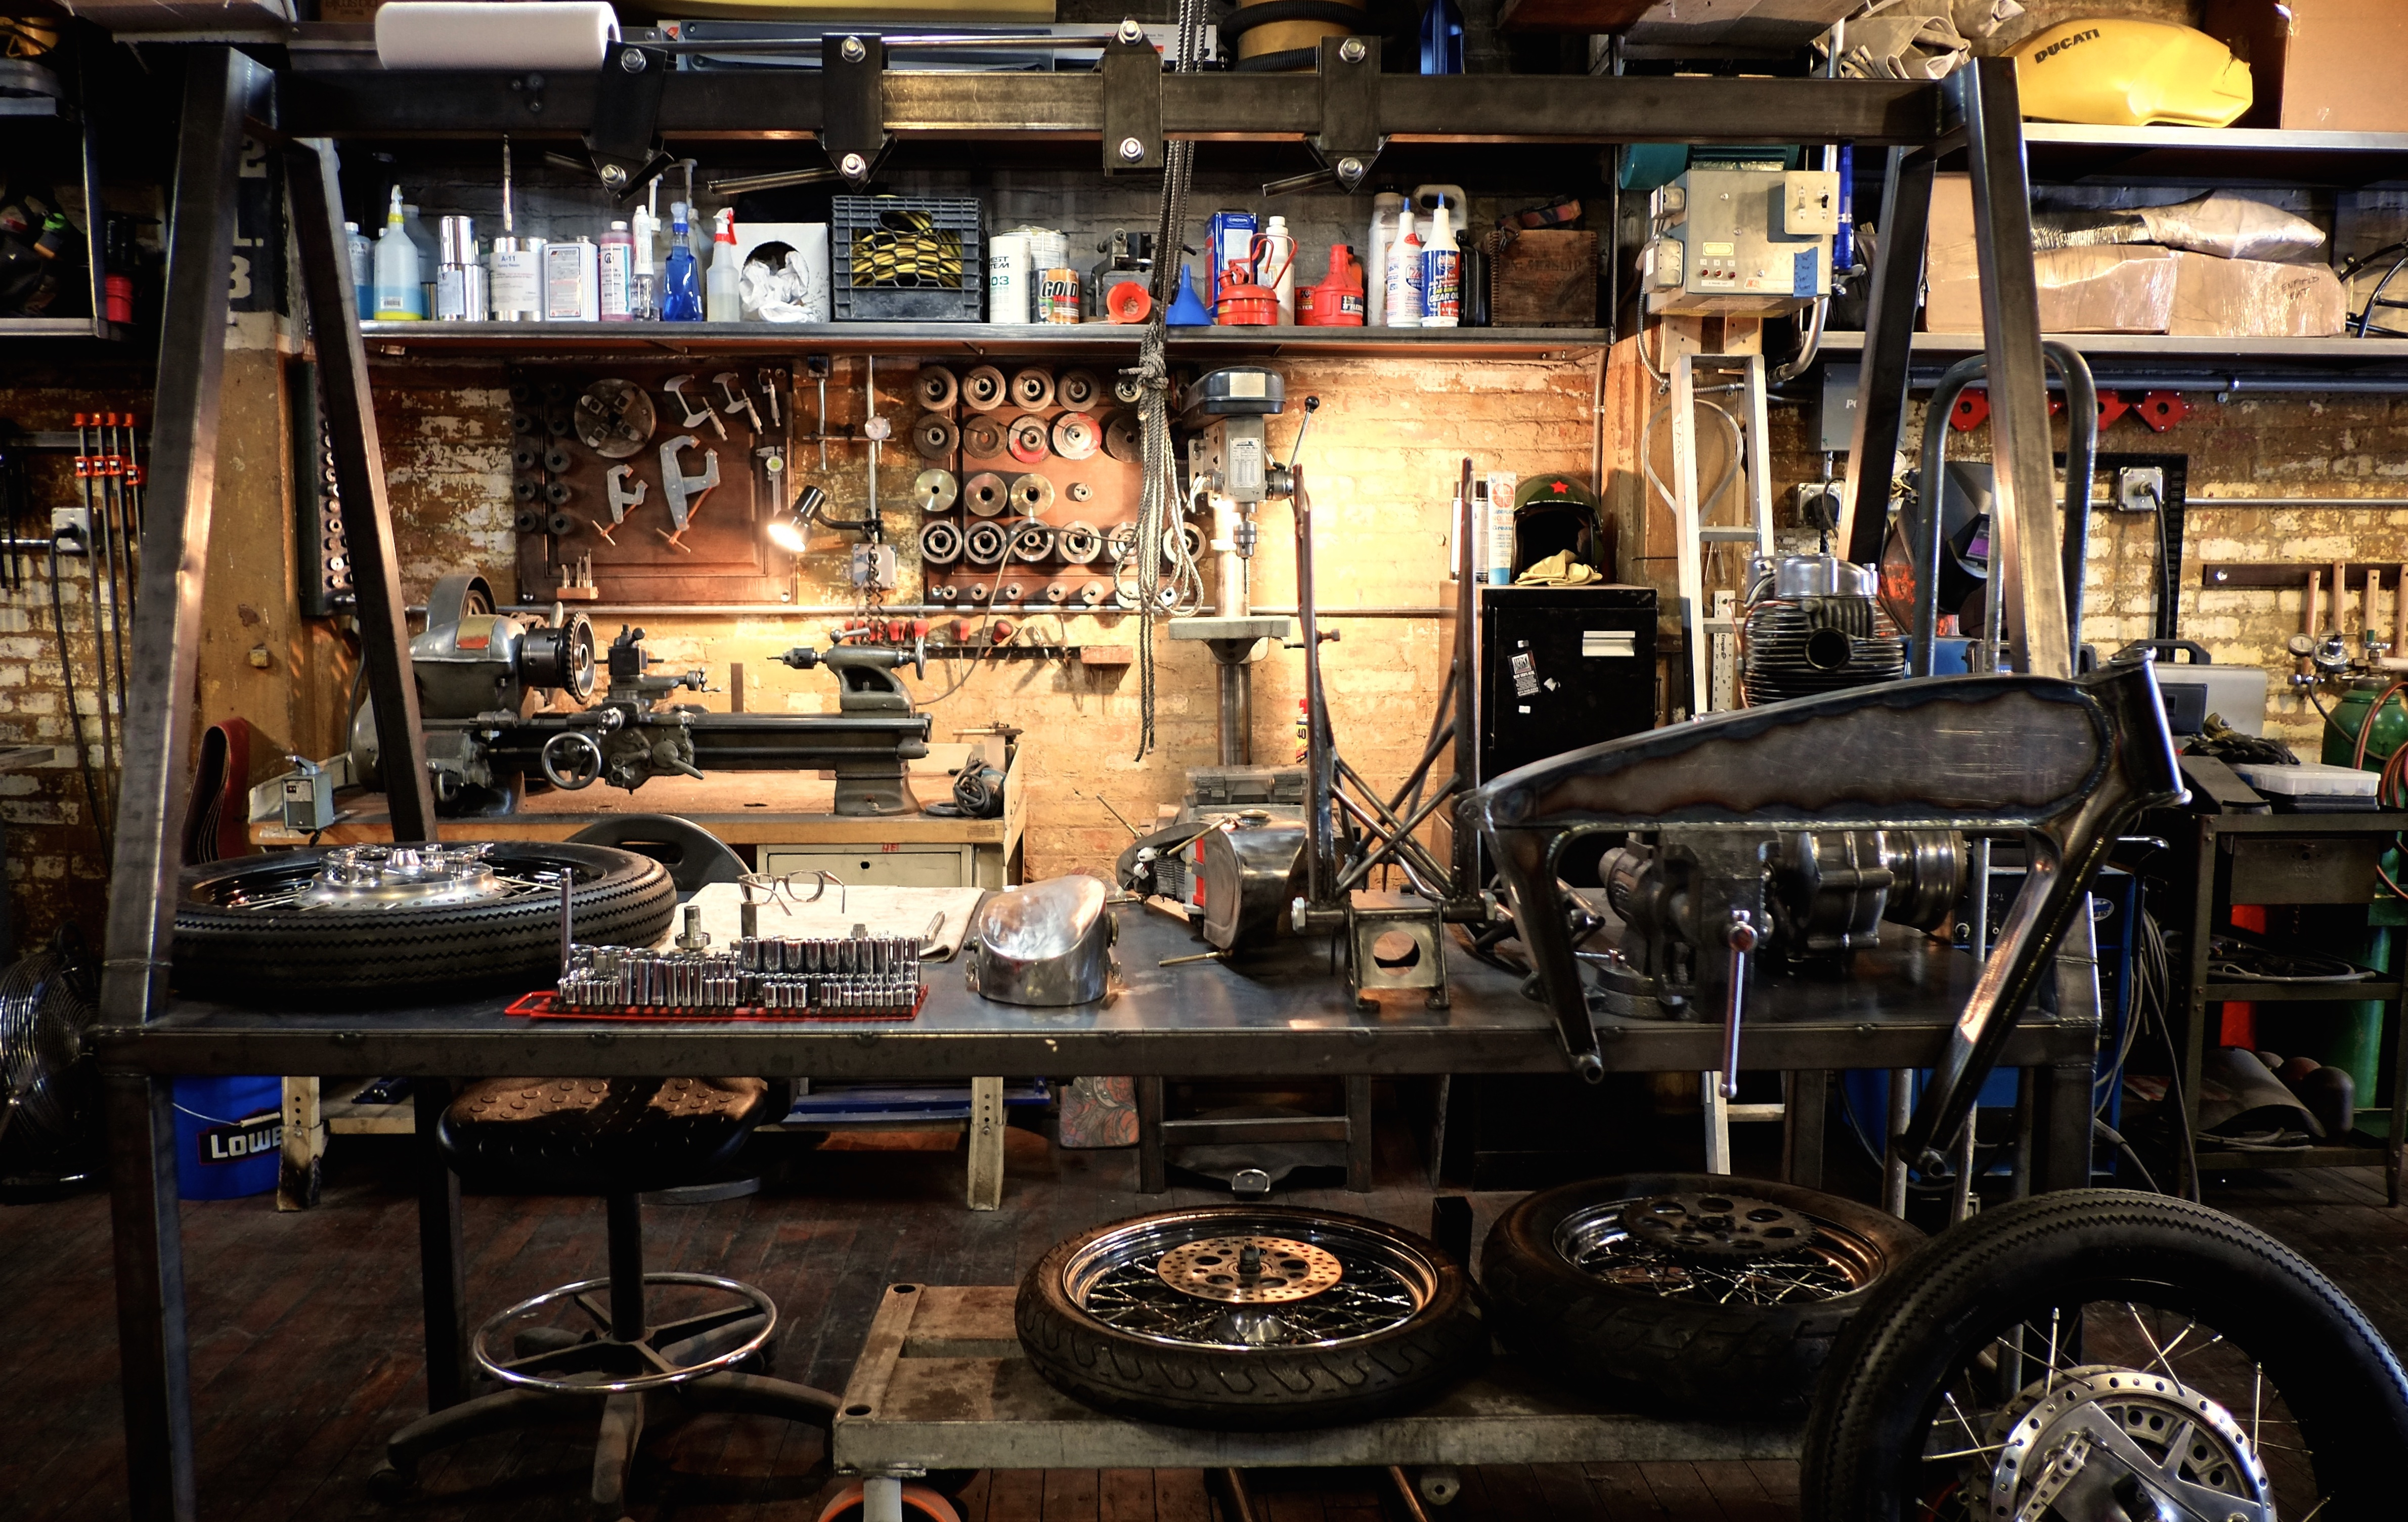 motorcycle parts strewn around a garage